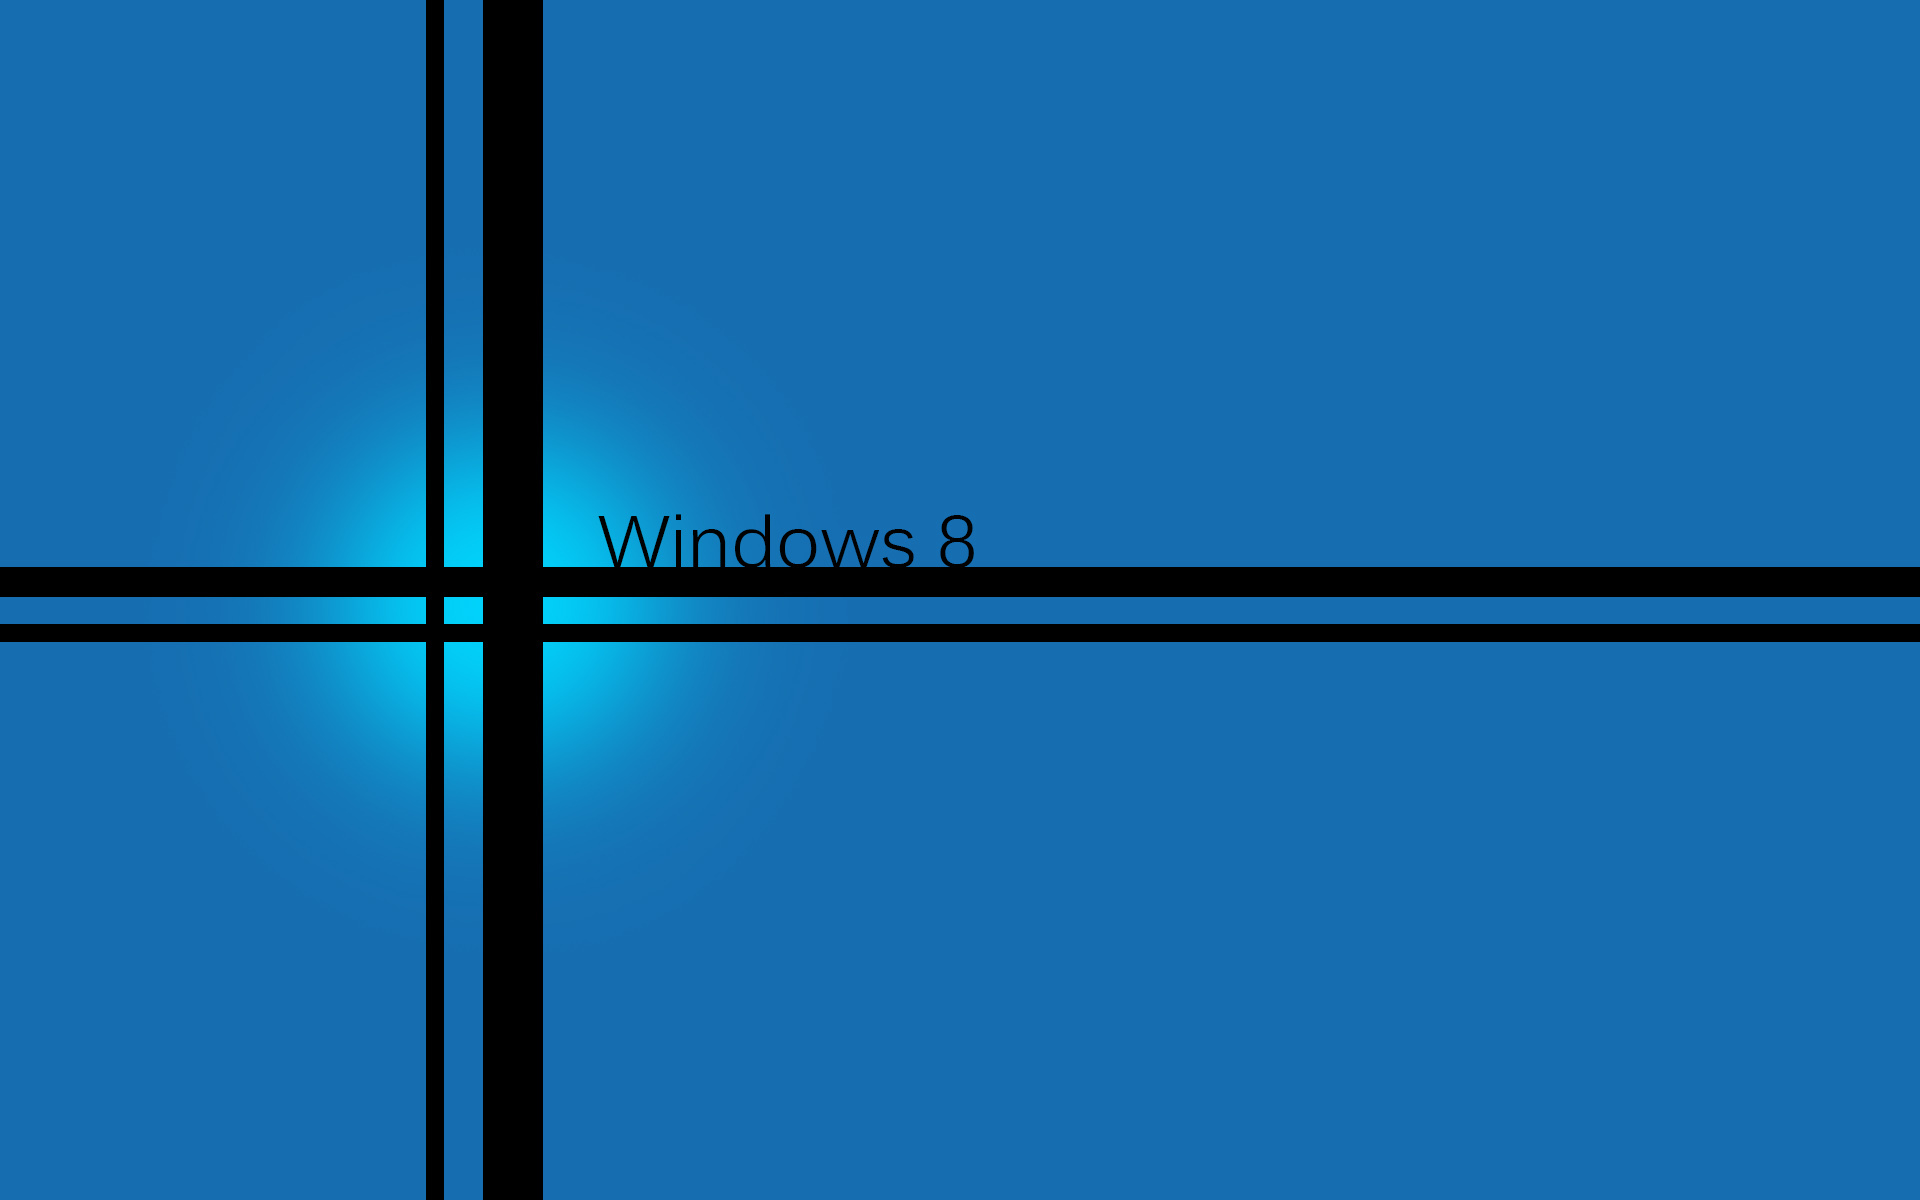 Trang trí cho desktop của bạn với những hình nền Windows 8 đẹp mắt nhất, điều này sẽ giúp cho không gian làm việc của bạn thêm phần sáng tạo và độc đáo. Những thiết kế trơn tru và tinh tế giúp bạn tập trung khi làm việc cũng như mang đến cho bạn sự thư giãn khi tận hưởng những giờ phút giải trí. Nhấp ngay để tải về hình nền Windows 8 mà bạn yêu thích.